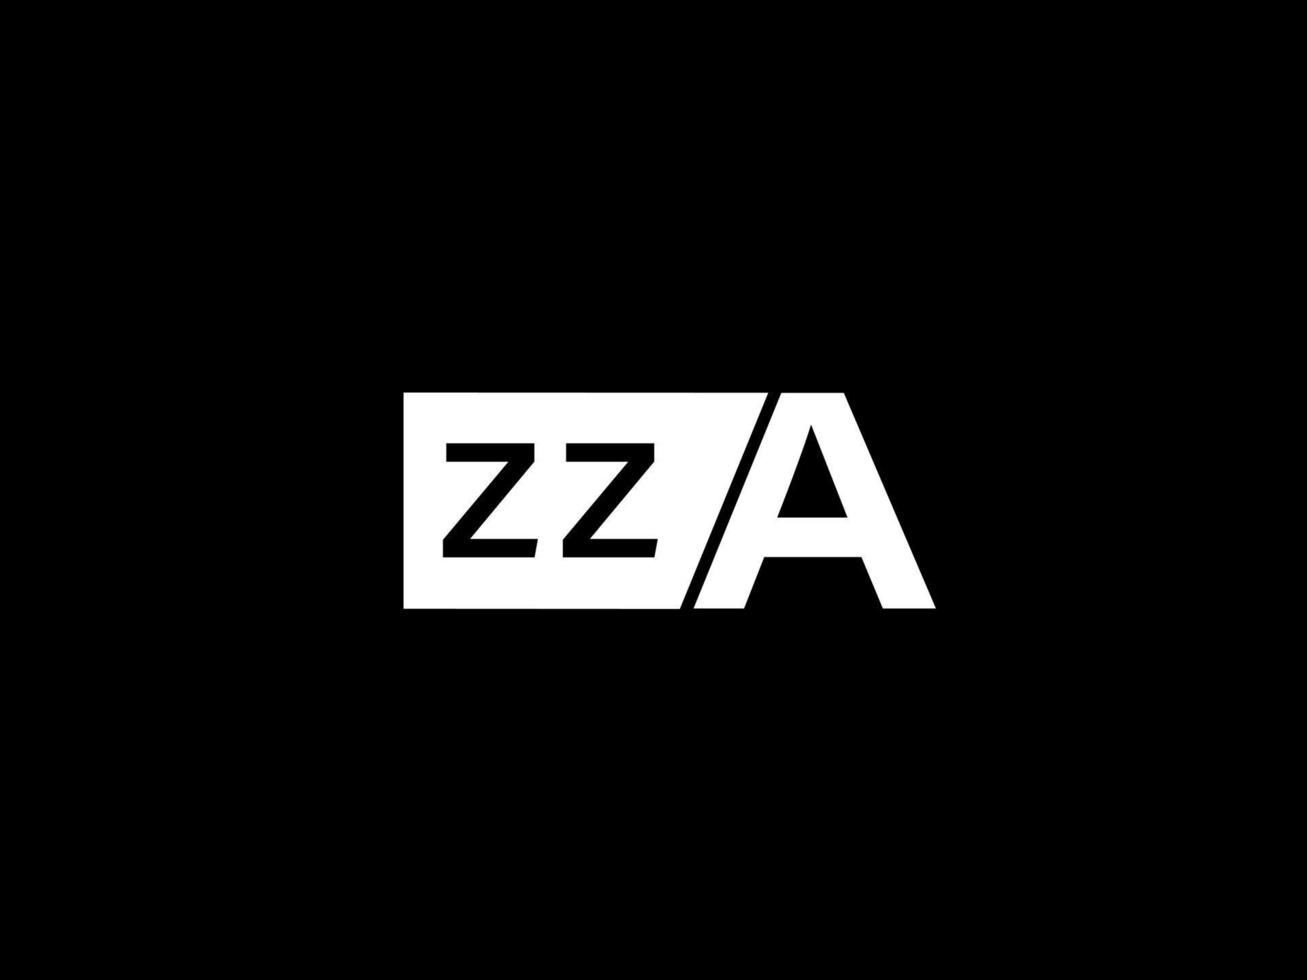 logotipo zza e arte vetorial de design gráfico, ícones isolados em fundo preto vetor